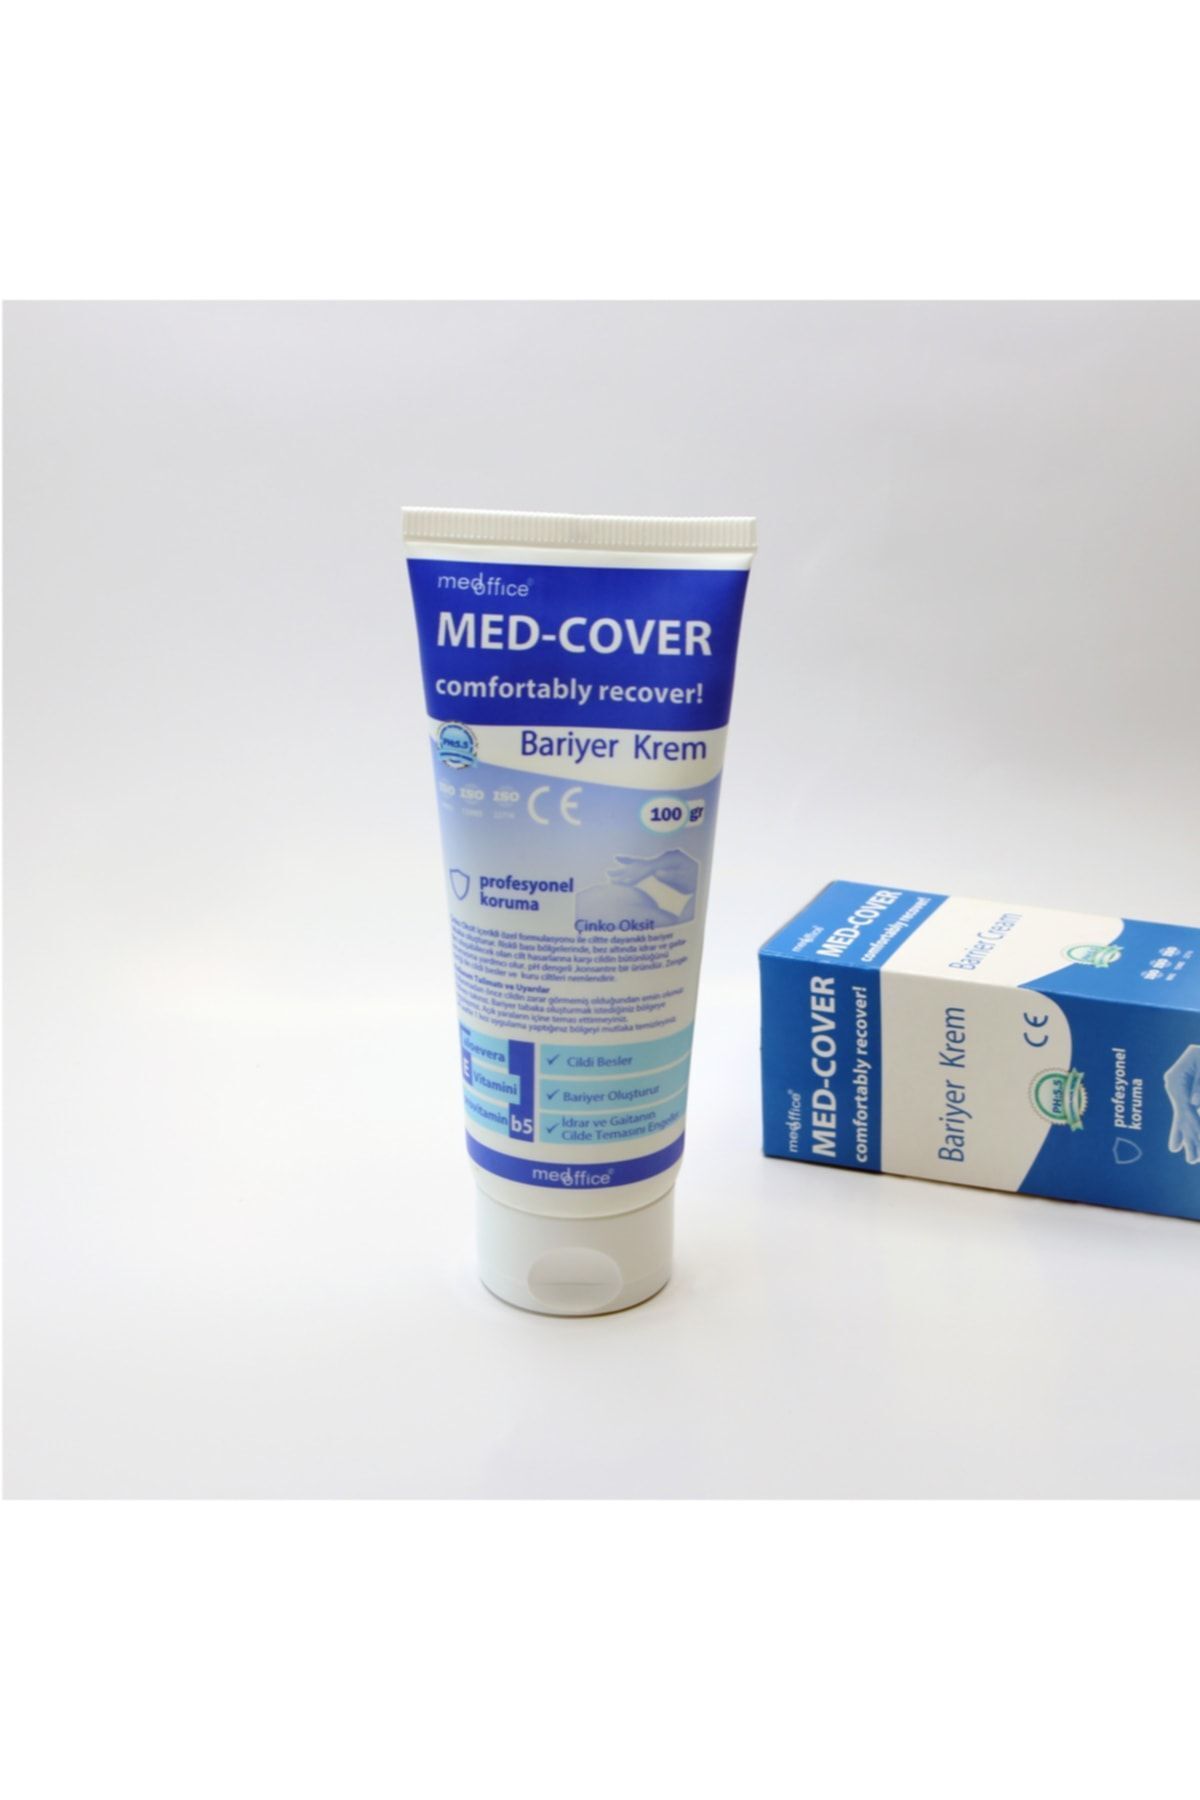 Medcover Med-cover Çinko Oksit Bariyer Krem